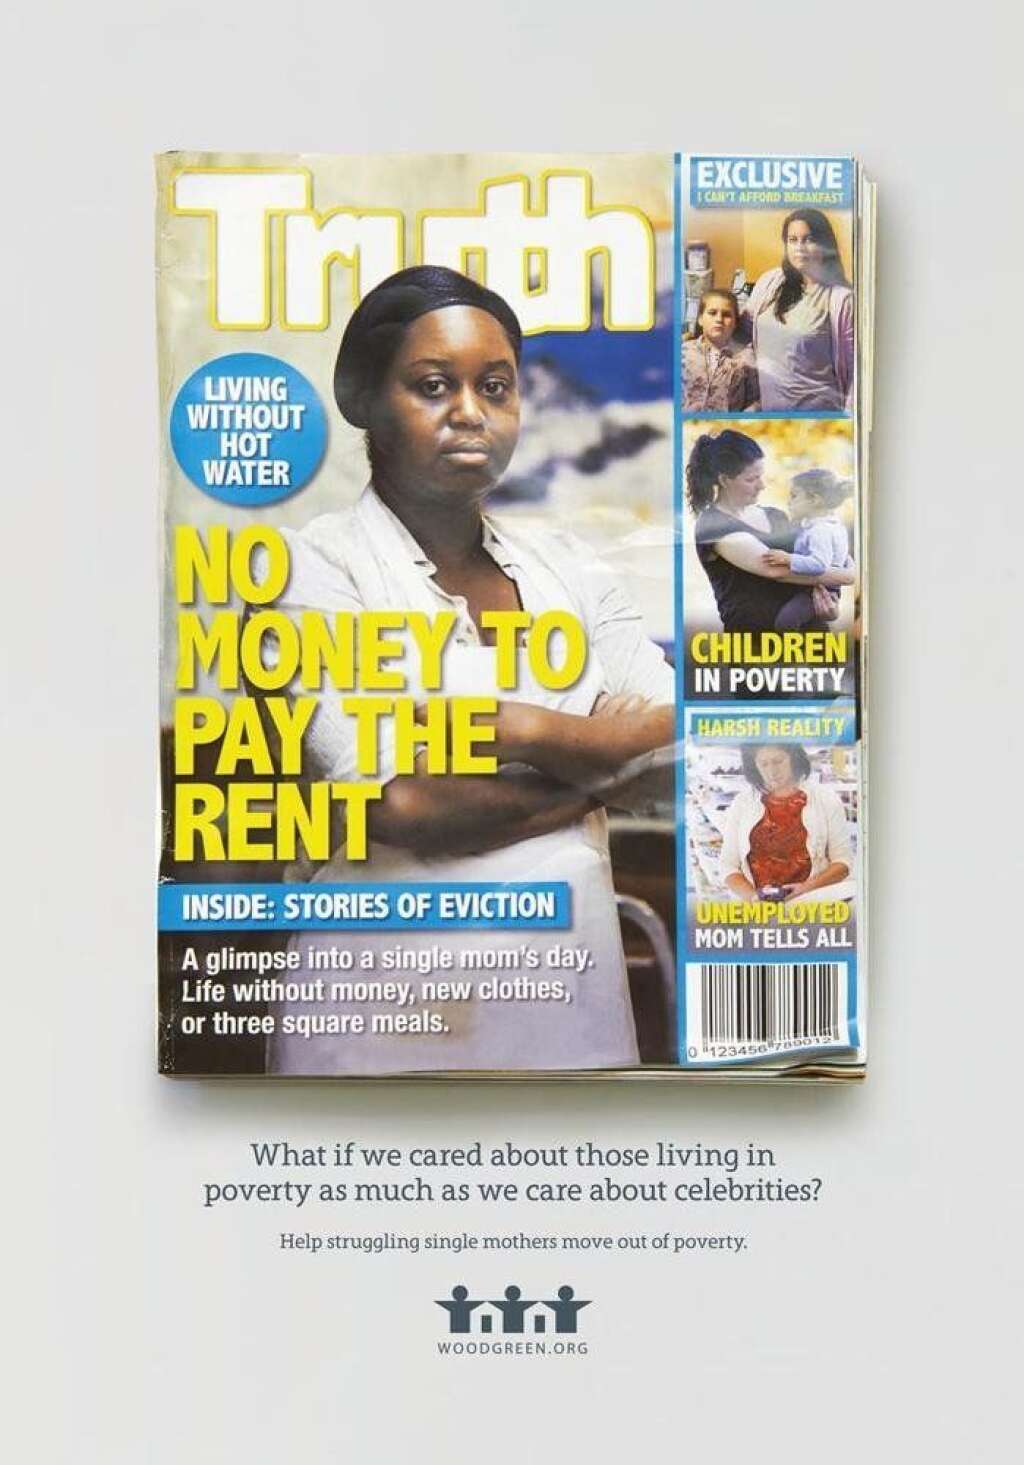 TRUTH - "Pas d'argent pour payer le loyer", dit la couverture. "Un aperçu de la vie d'une mère célibataire".